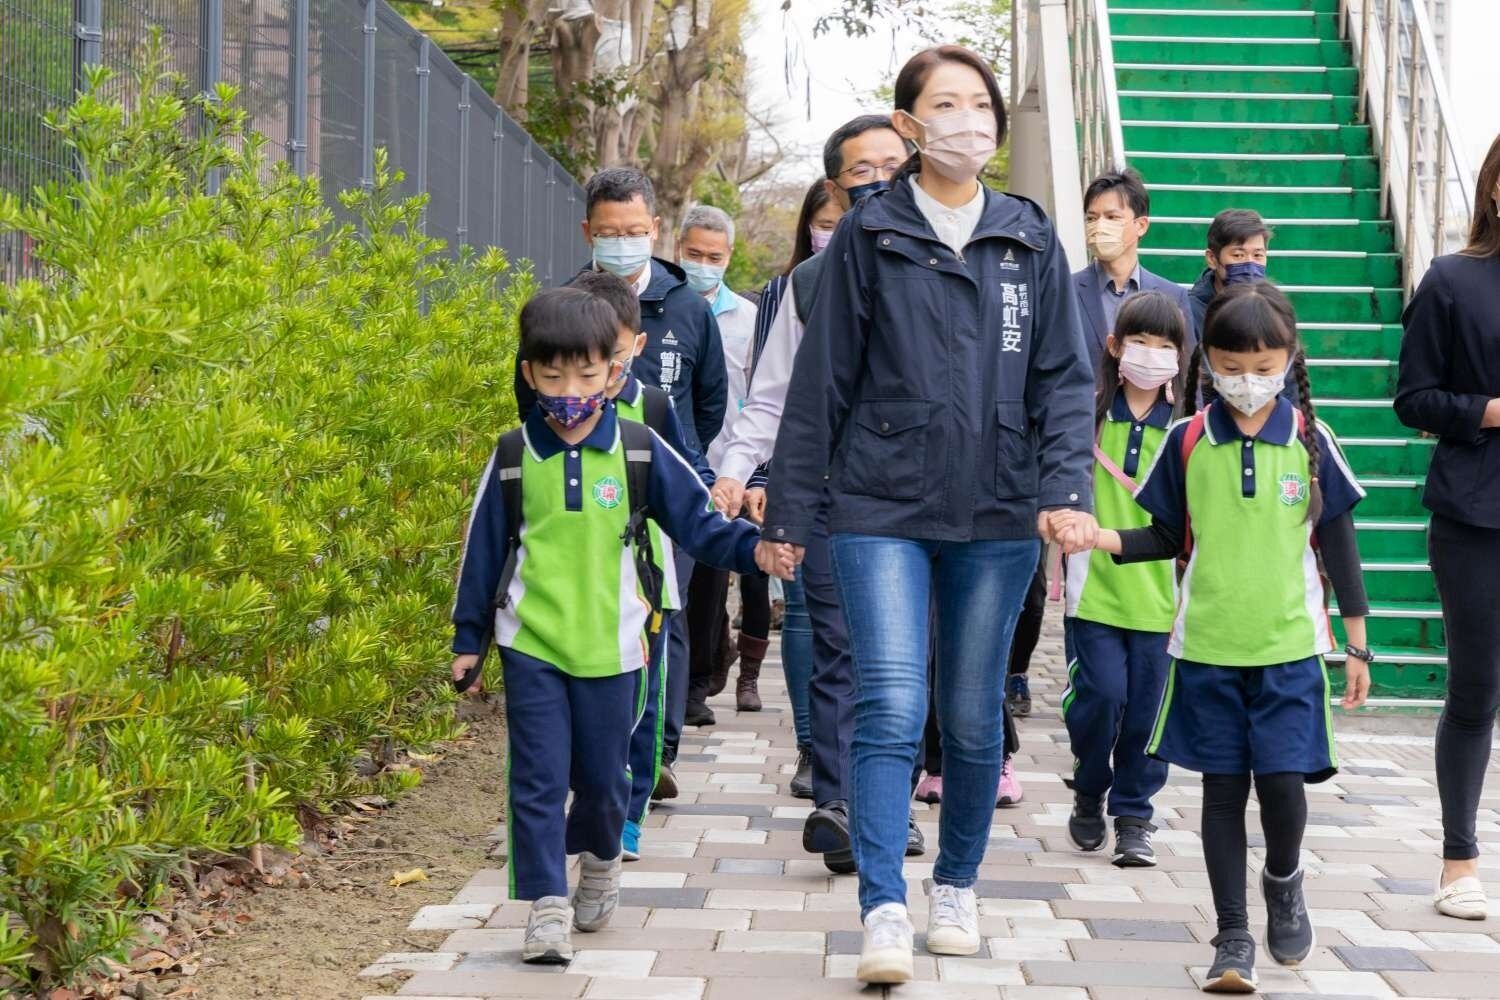 竹市通學步道已核定4.6億元，補助全市24校進行校園周邊通學步道規劃與改善。